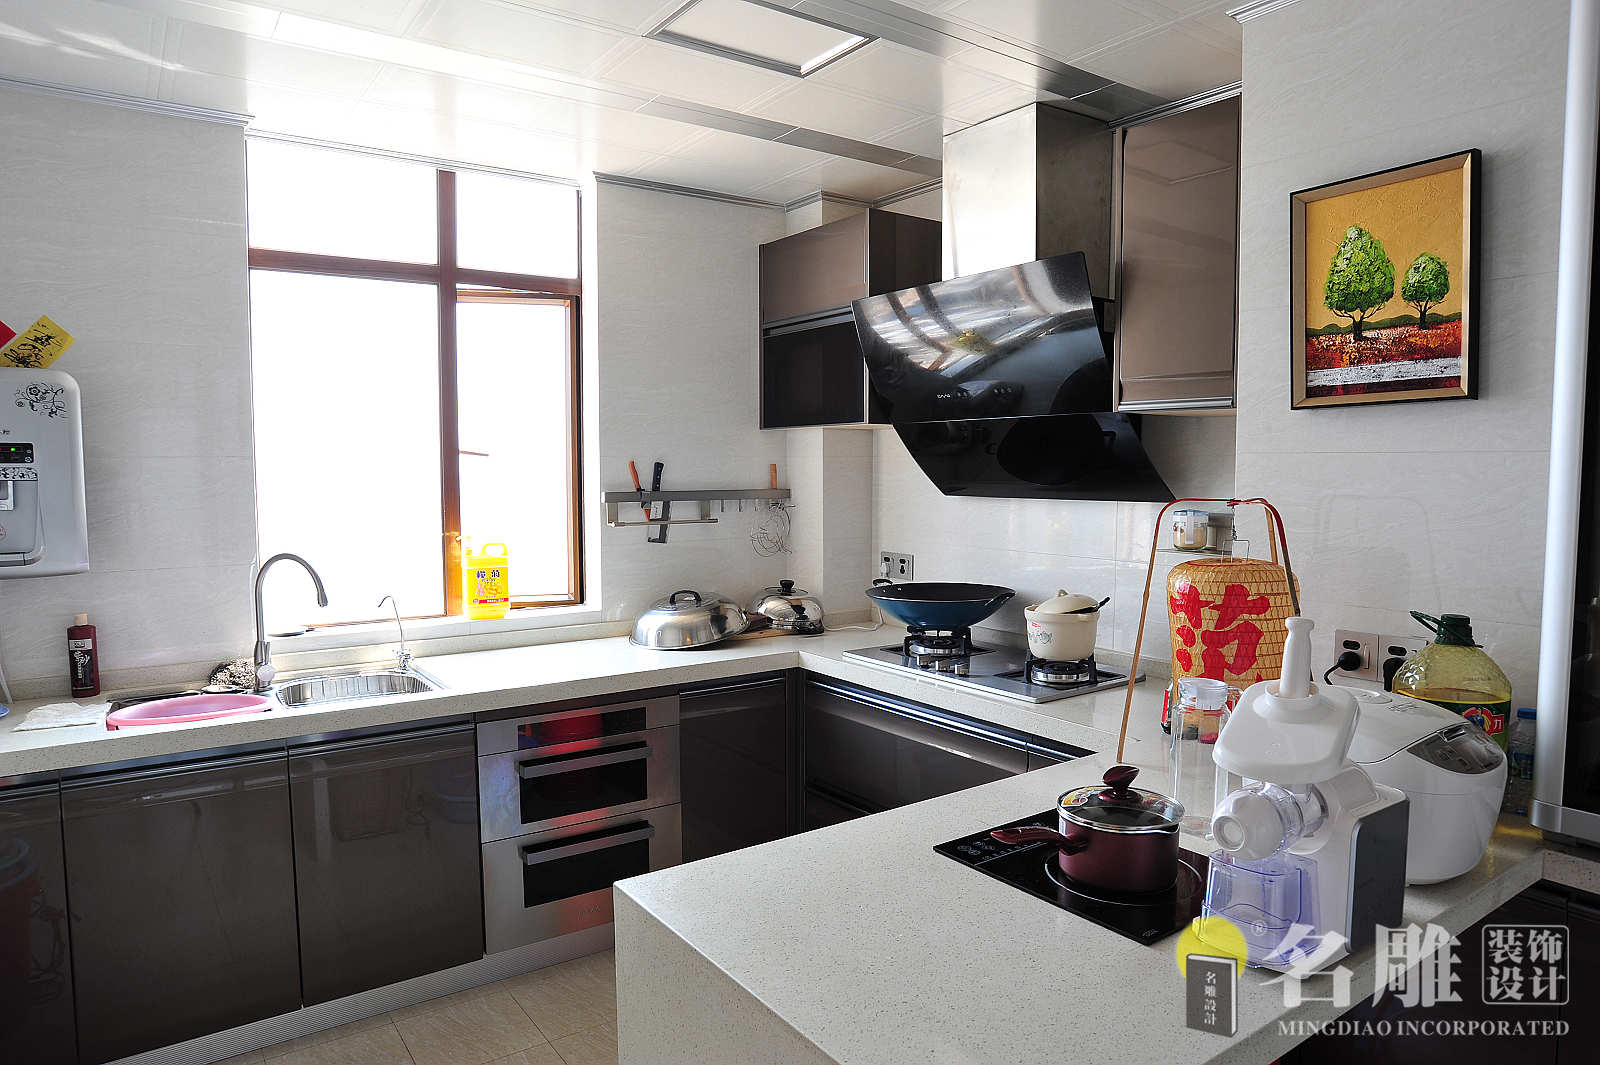 欧式 四居 豪华不俗气 舒适、温馨 品质、典雅 厨房 厨房图片来自广州名雕装饰在欧式豪华的分享